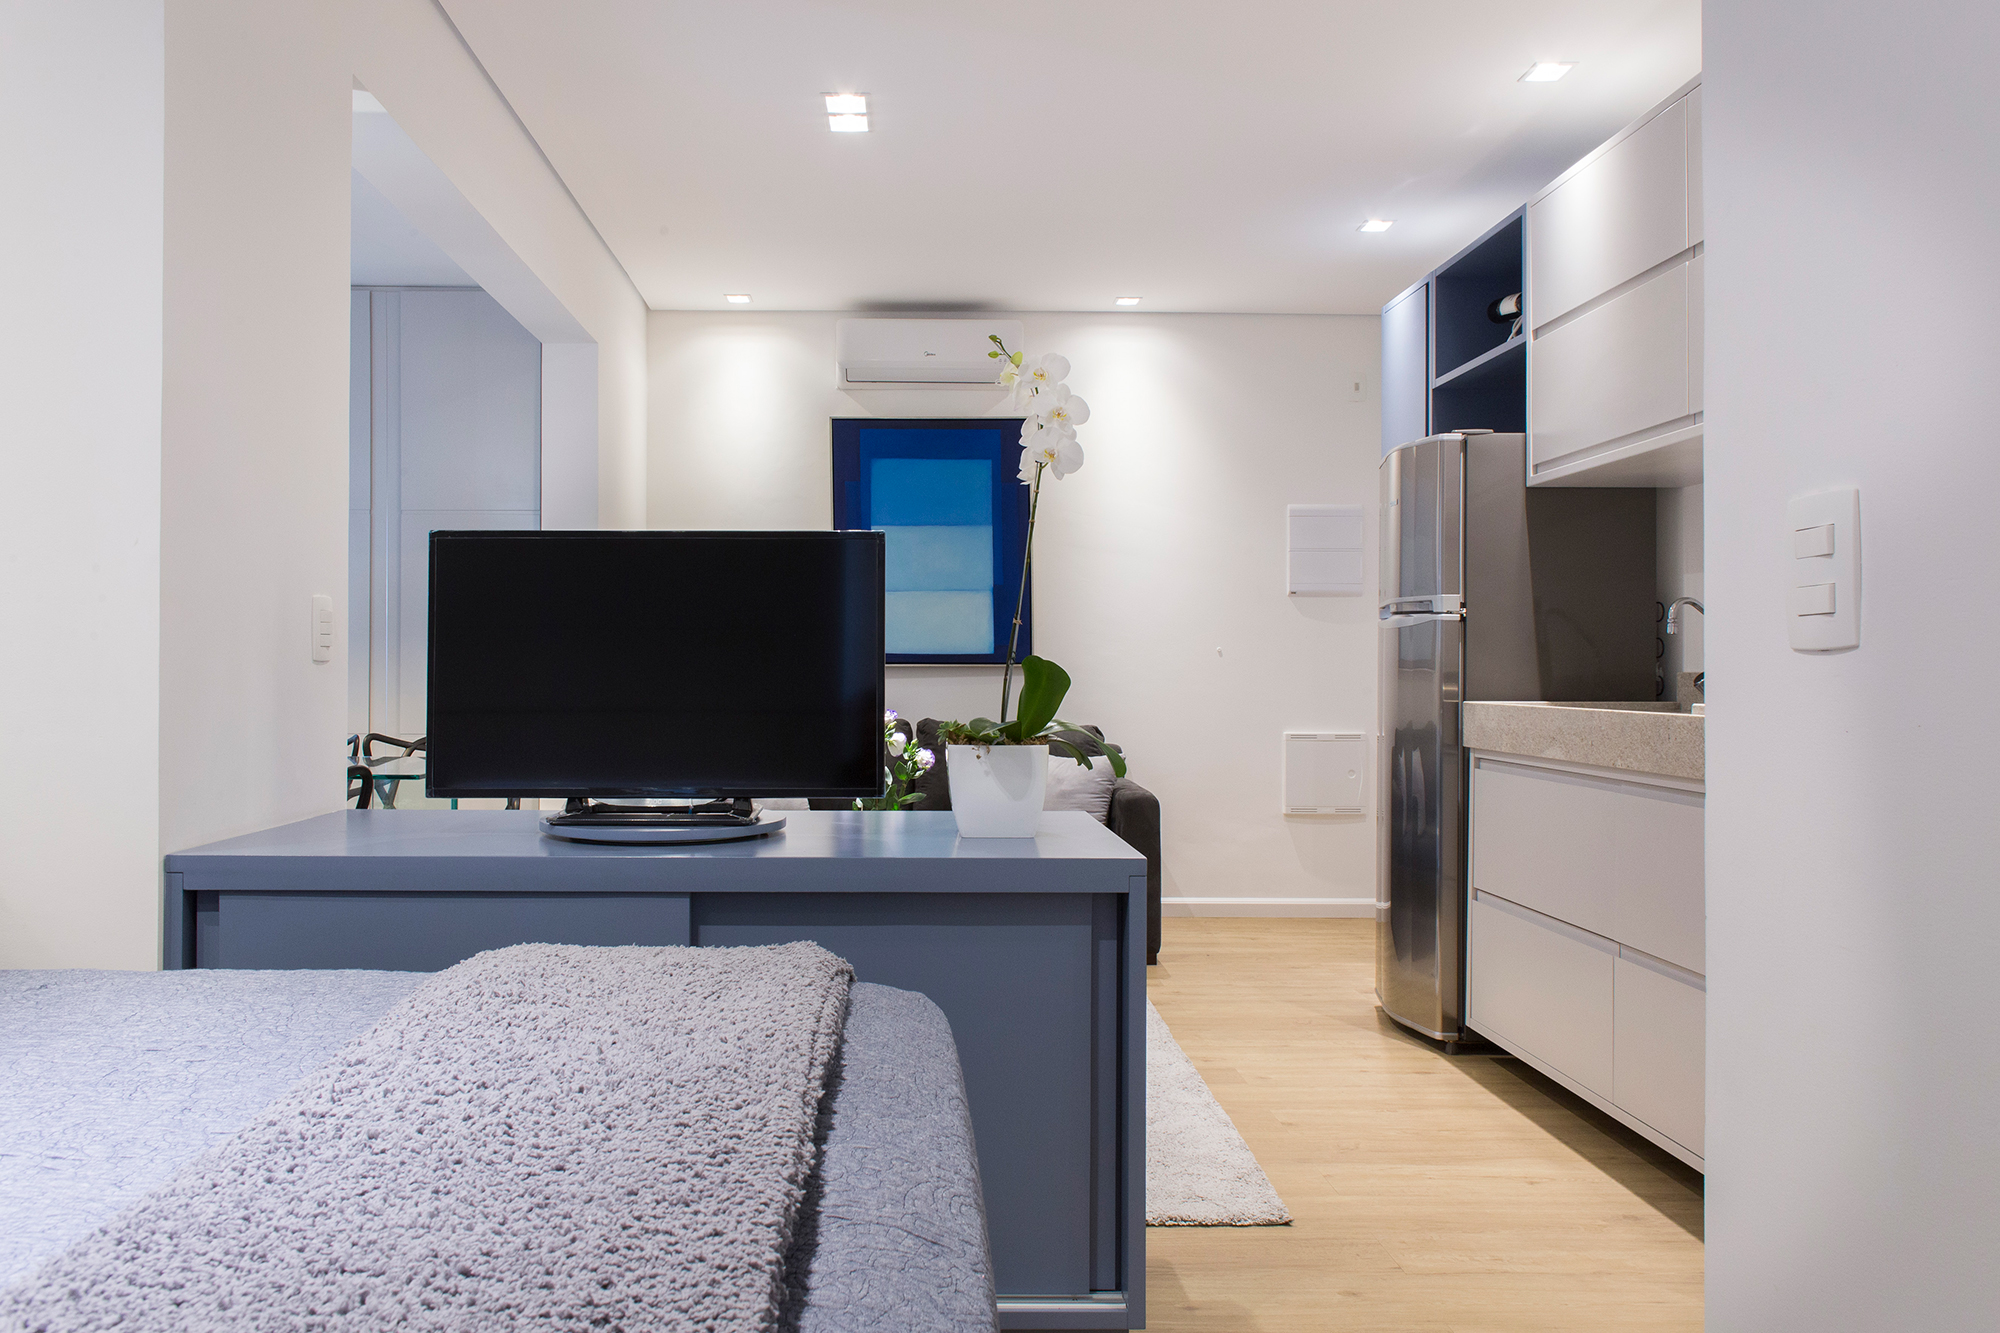 Cinza azul lavanderia armário apê 29 m2 Inovando Arquitetura decoração estudio sala quarto tv sofa cama